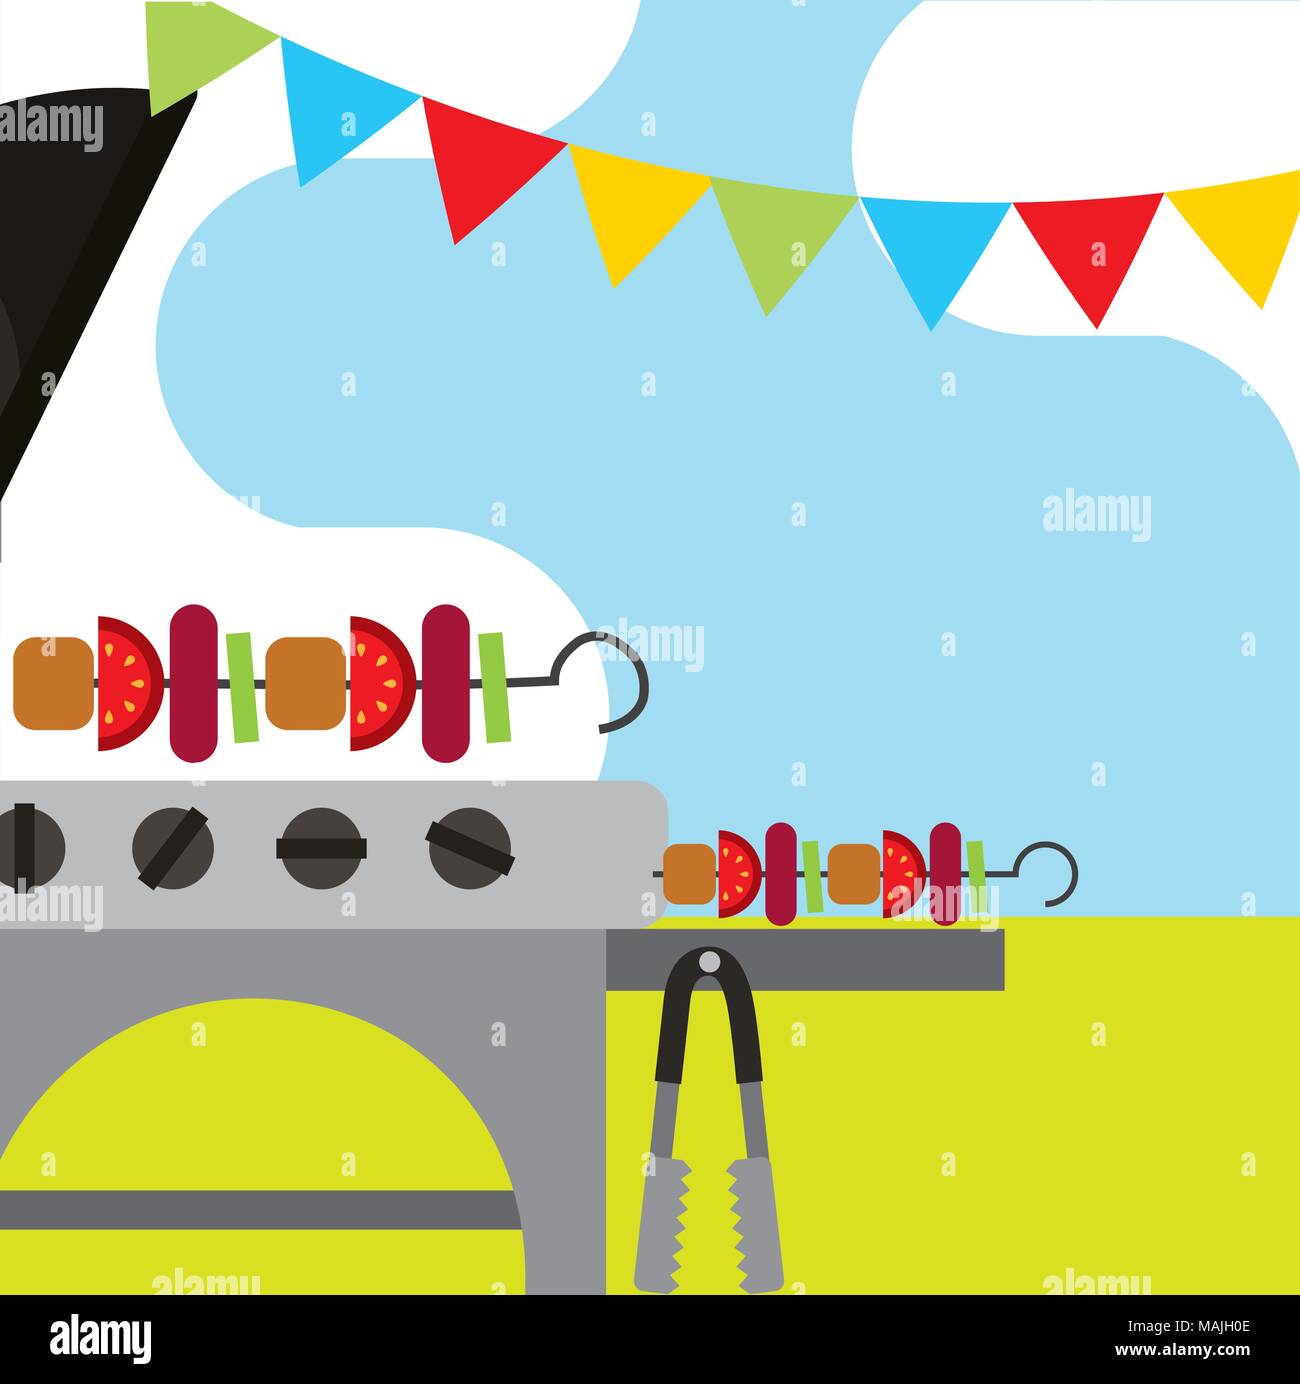 Picknick Grill geröstet Kebabs und graland hängenden Vector Illustration Stock Vektor